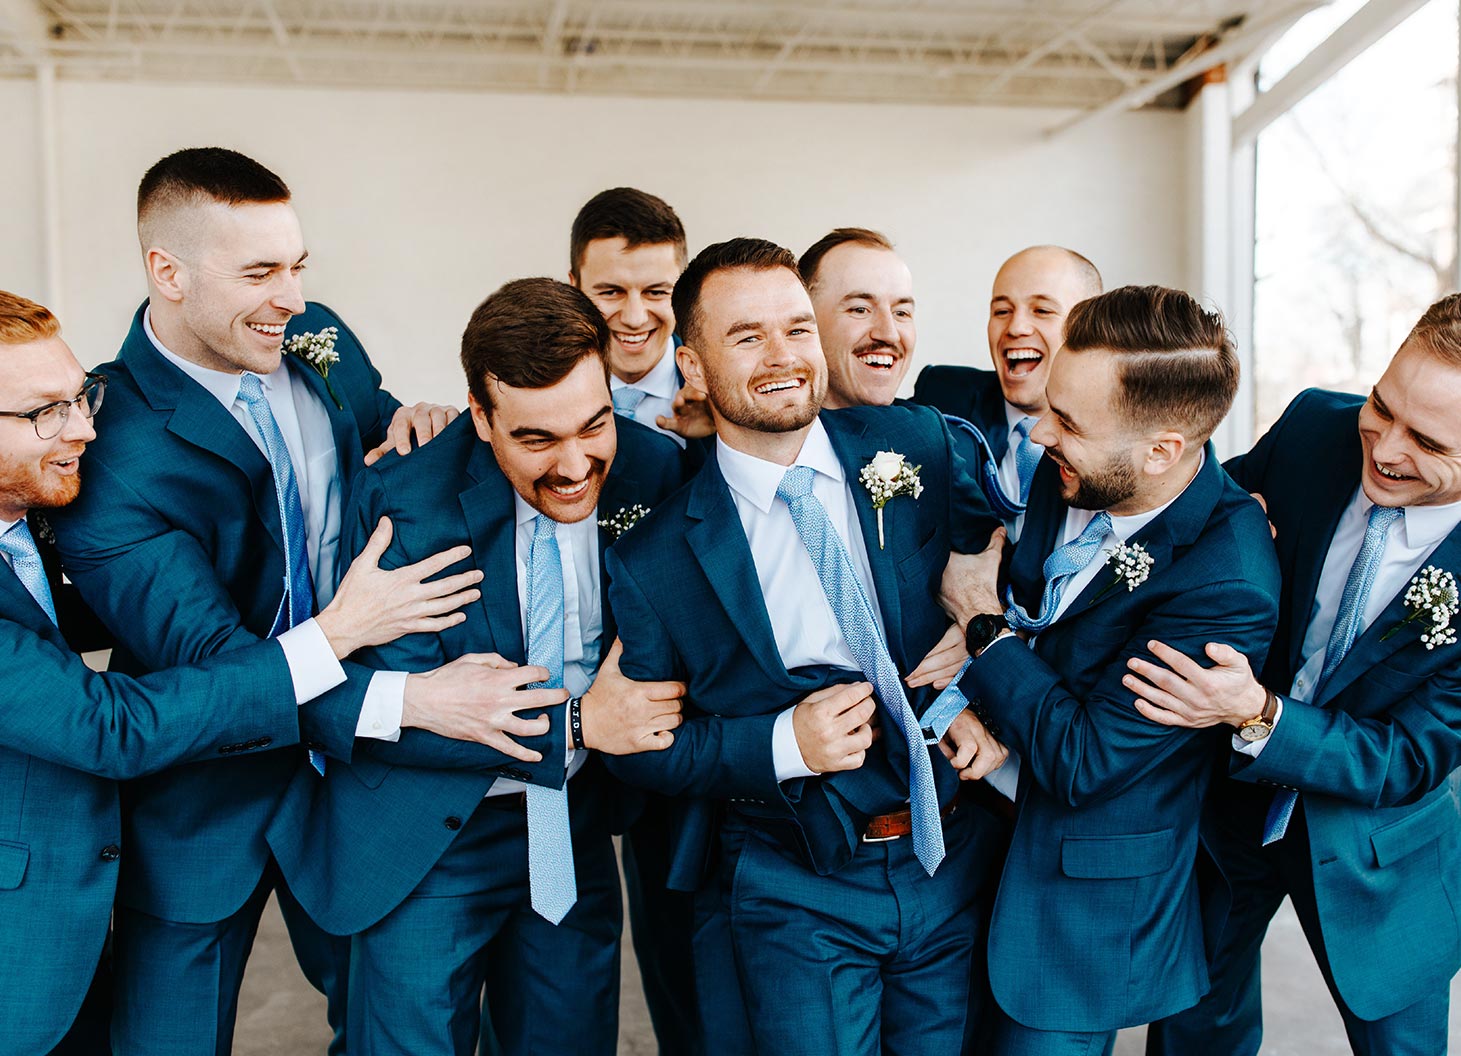 Men's Ties, Buy Men's Business & Wedding Ties